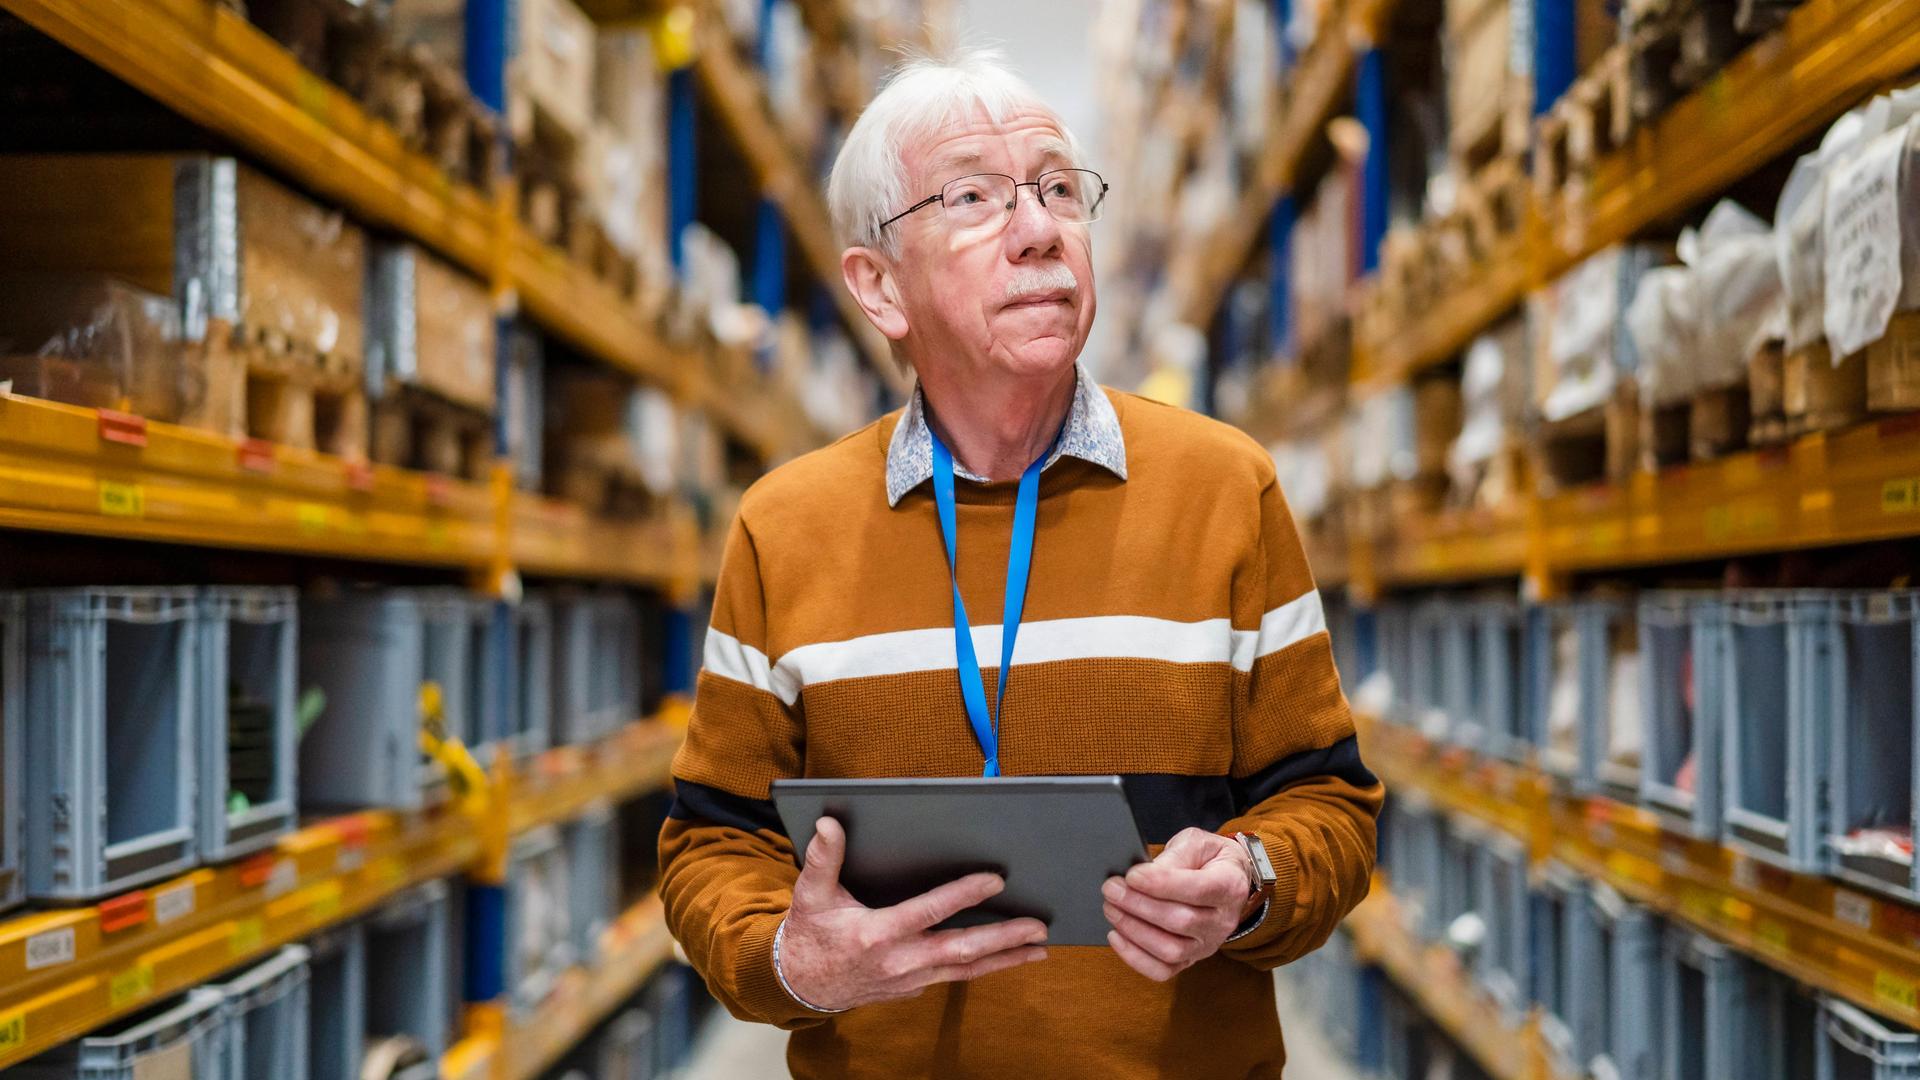 Ein älterer Mann steht mit einem Tablet in der Hand im Gang eines Warenlagers.